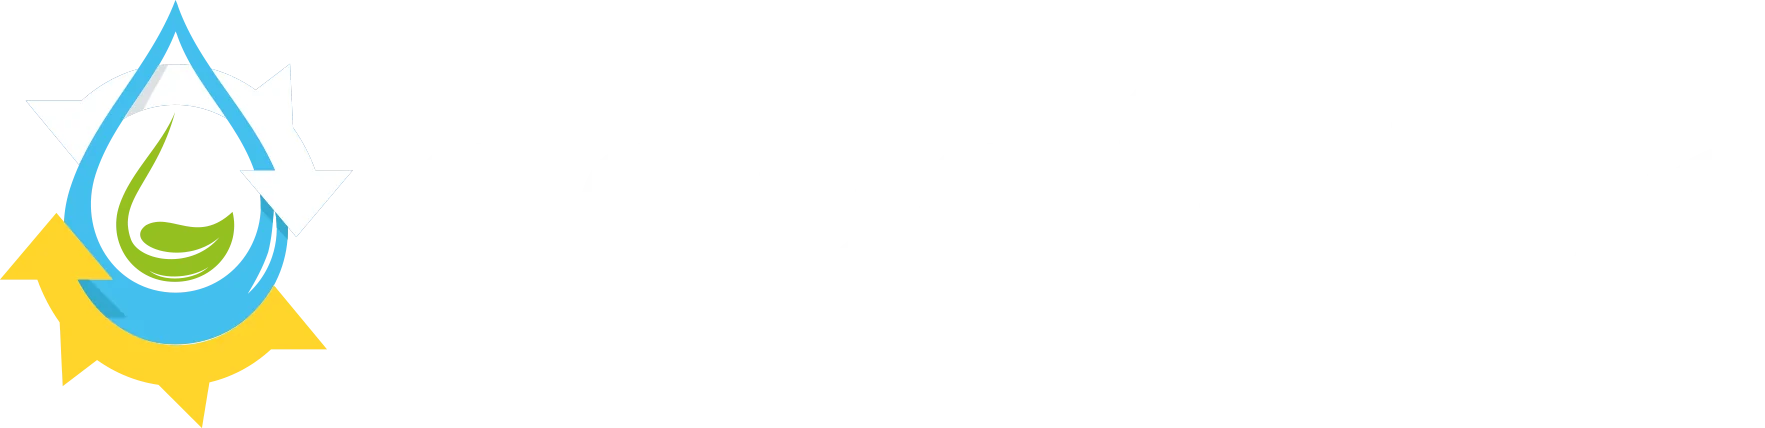 Logo empresa de Distribución de equipos Solares de bombeo y autoconsumo Aquafotón, almacén de material fotovoltaico